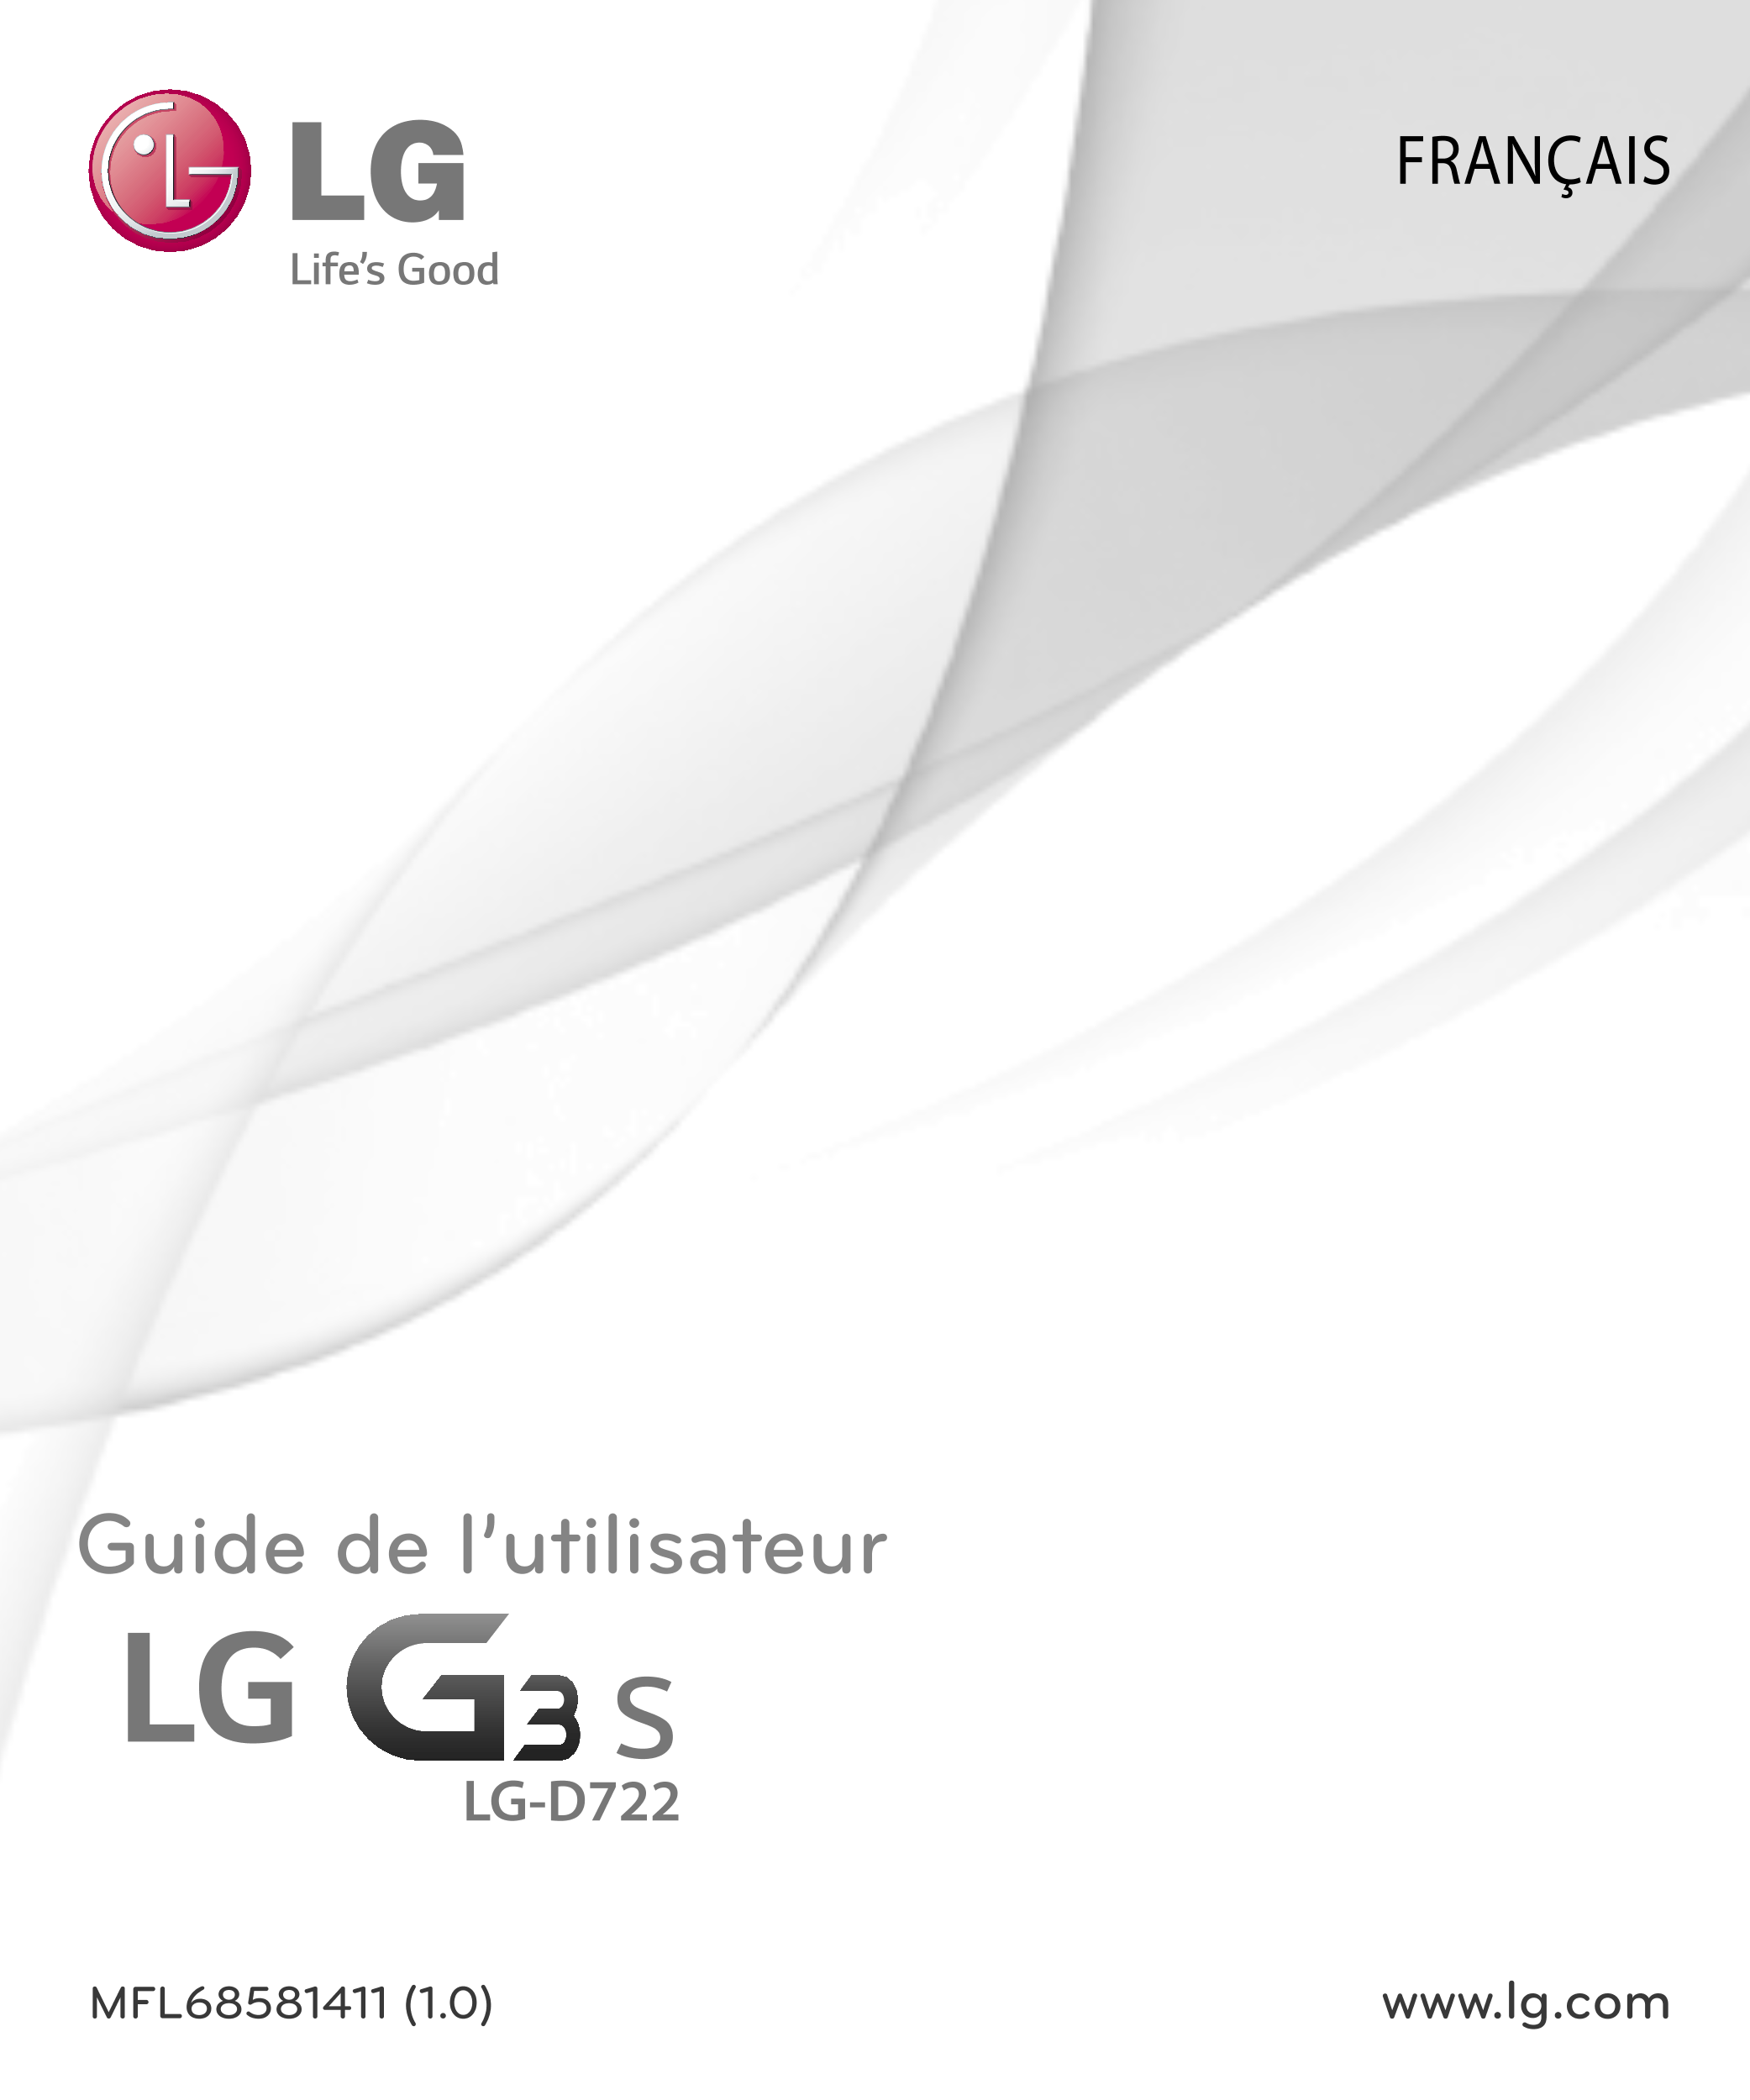 FRANÇAIS
Guide de l’utilisateur
LG-D722
MFL68581411 (1.0)  www.lg.com